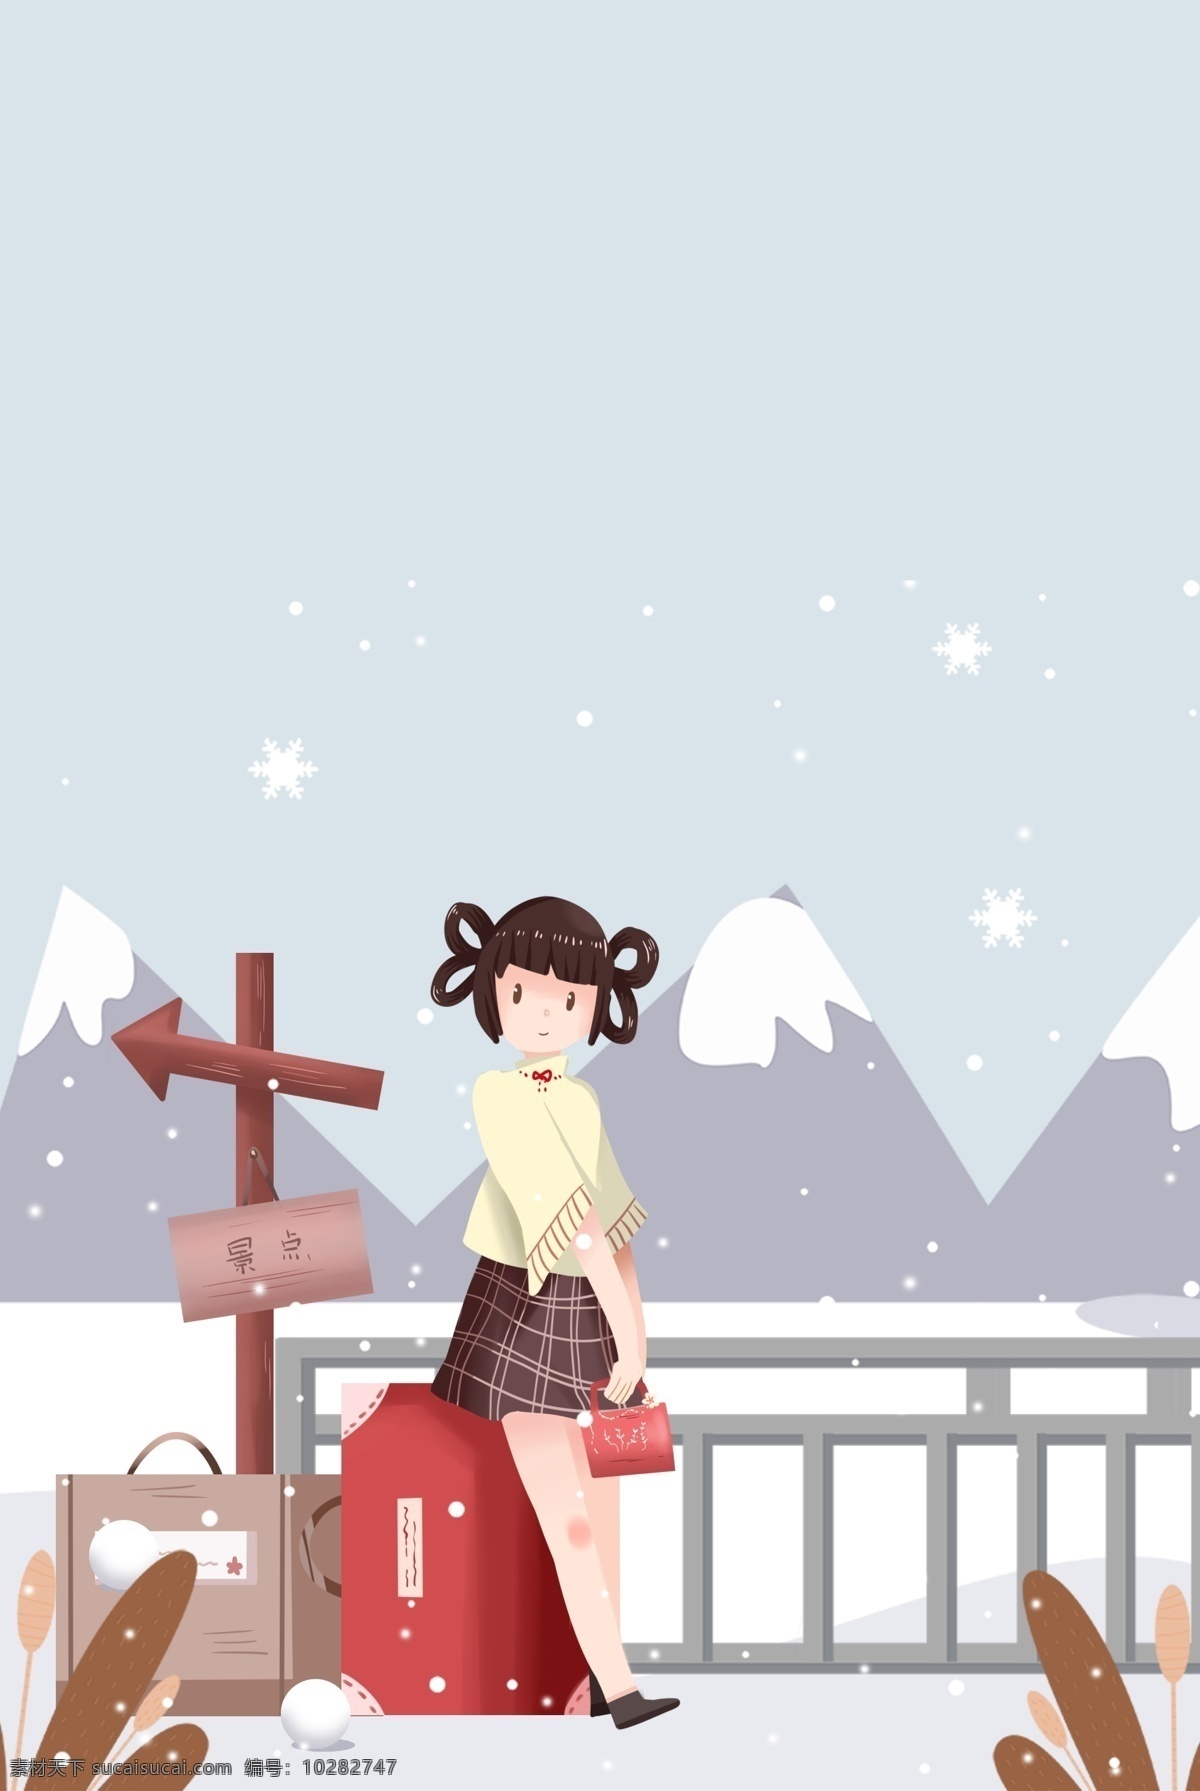 冬日 国外 旅行 女孩 插画 海报 冬天 群山 出行 路标 行李 插画风 促销海报